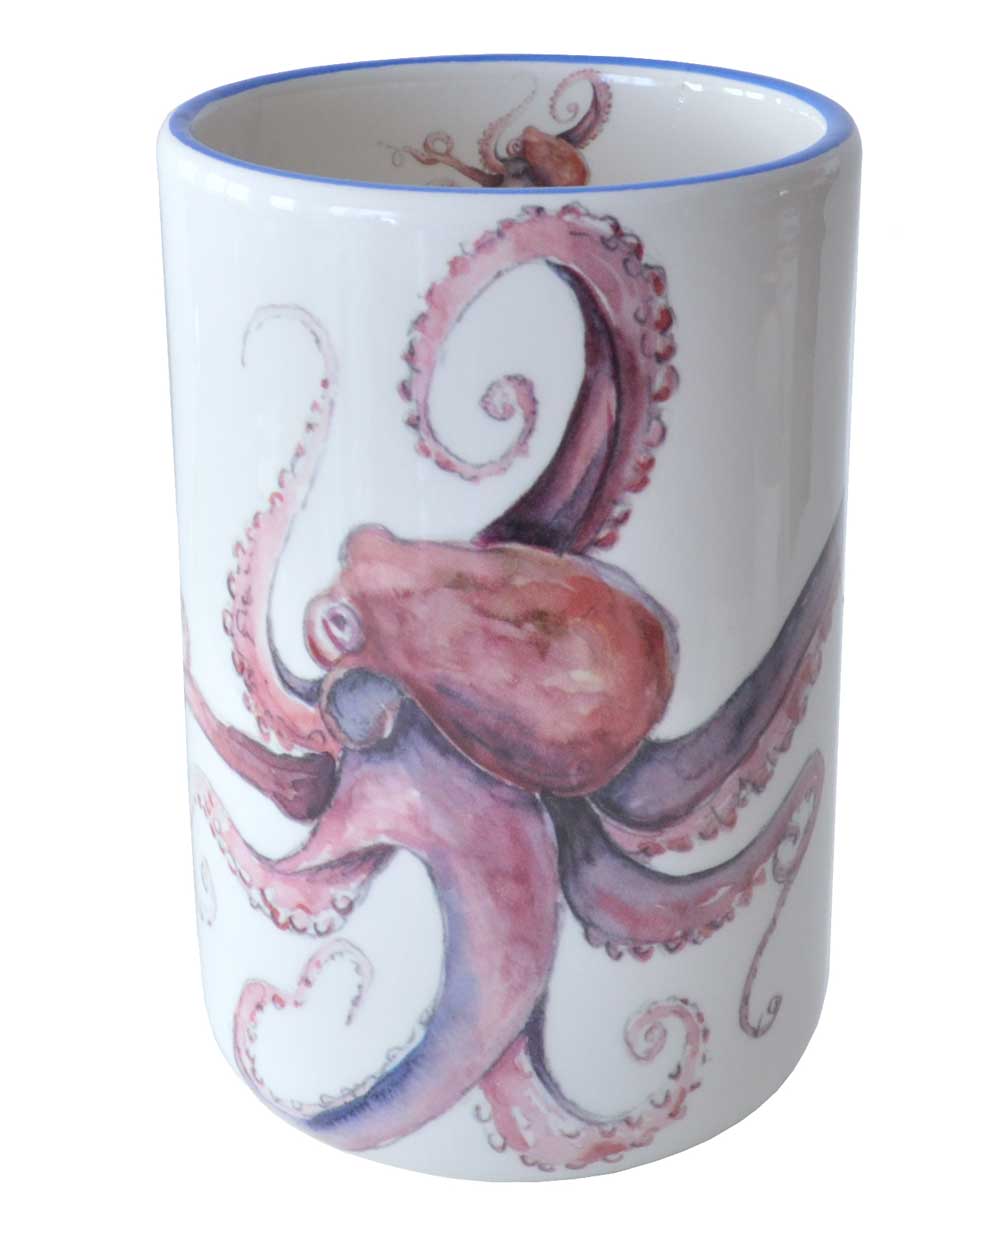 Octopus Wine Bottle Holder / Utensil Holder / Vase